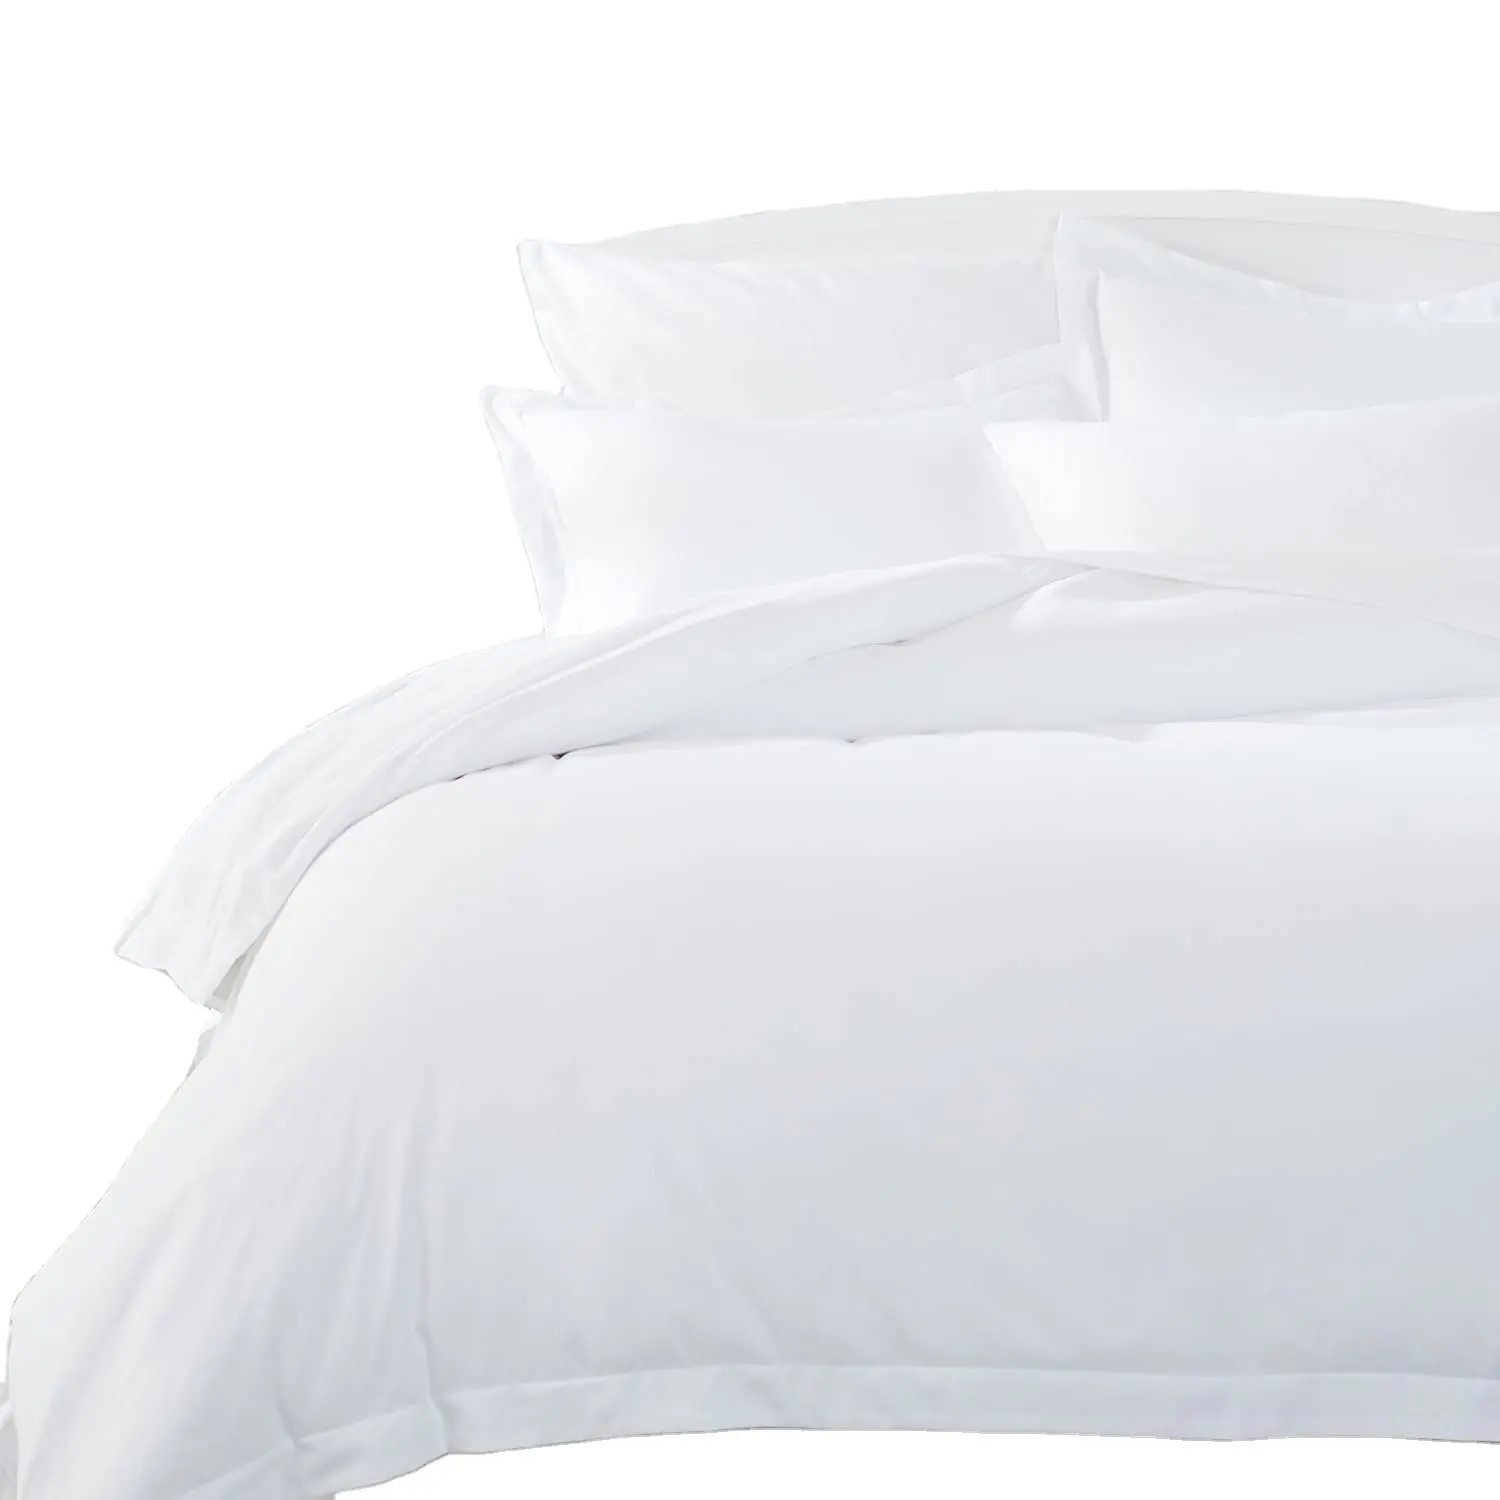 الجملة طقم فراش السرير من الكتان الفاخرة 300TC 4 قطع غطاء سرير مجموعة الفراش الأبيض فندق